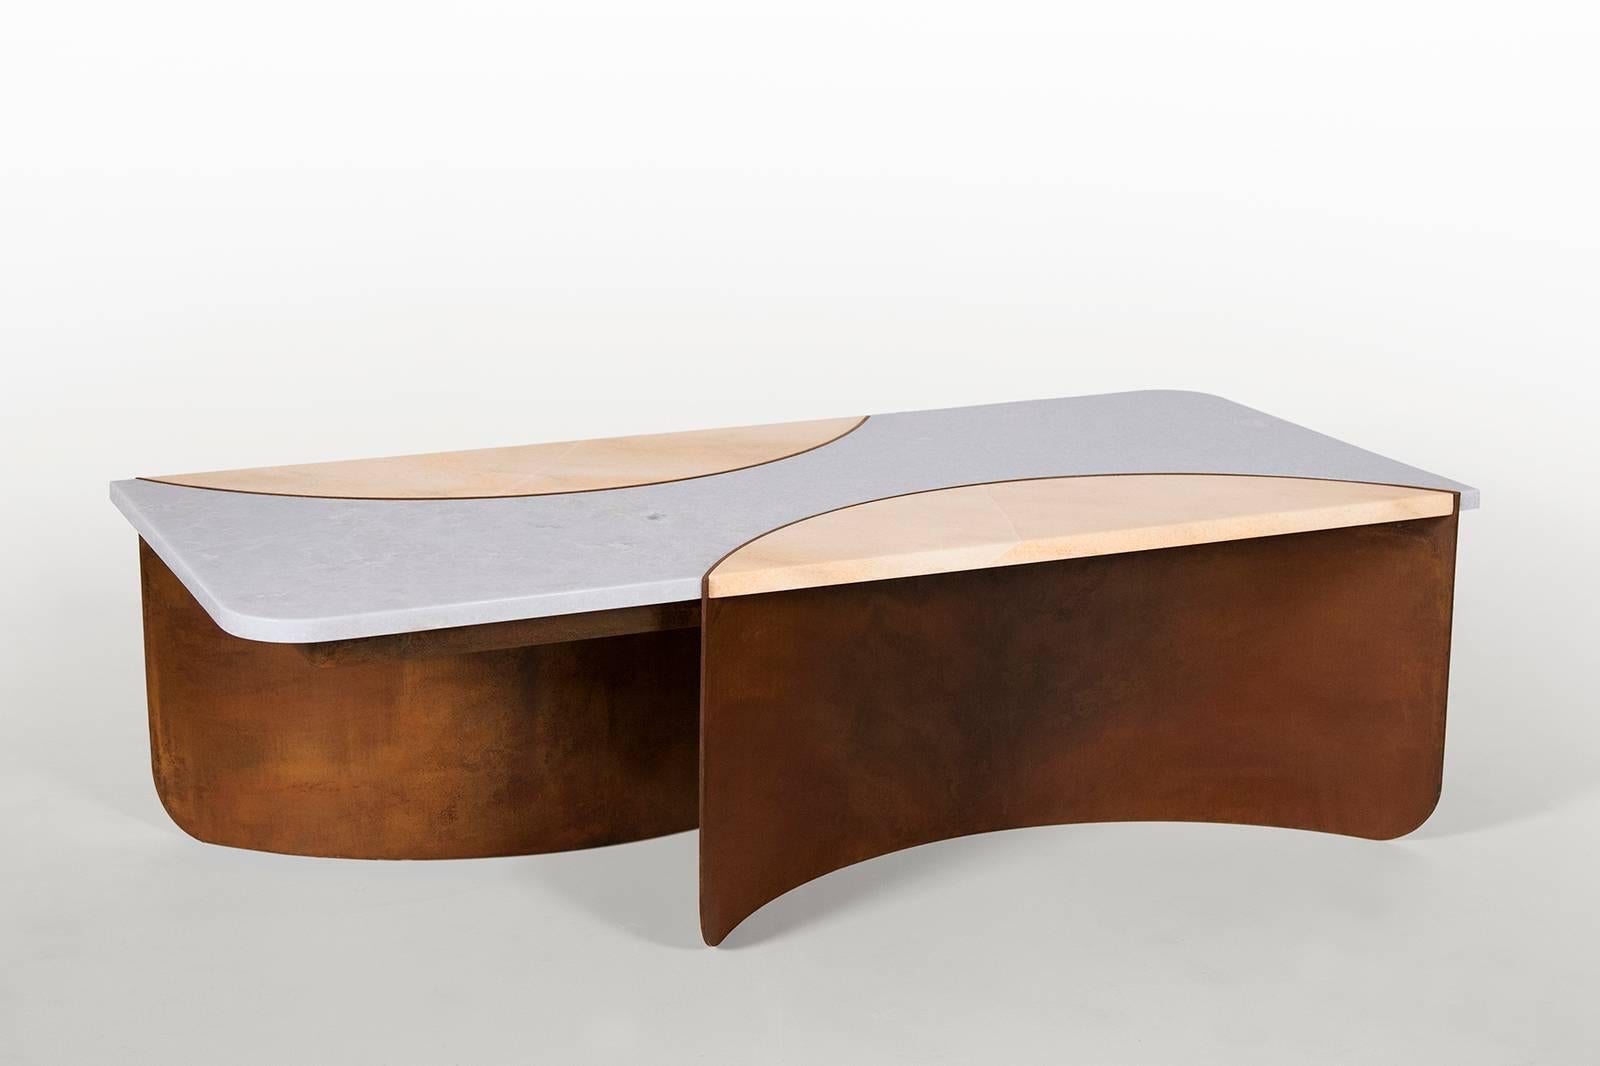 Dans la toute dernière création de Kin & Company, la table crescent, présentée en avant-première à sight unseen Offsite 2017, deux matériaux durs et impitoyables, le marbre et l'acier, sont gracieusement moulés en une forme imbriquée. La tension